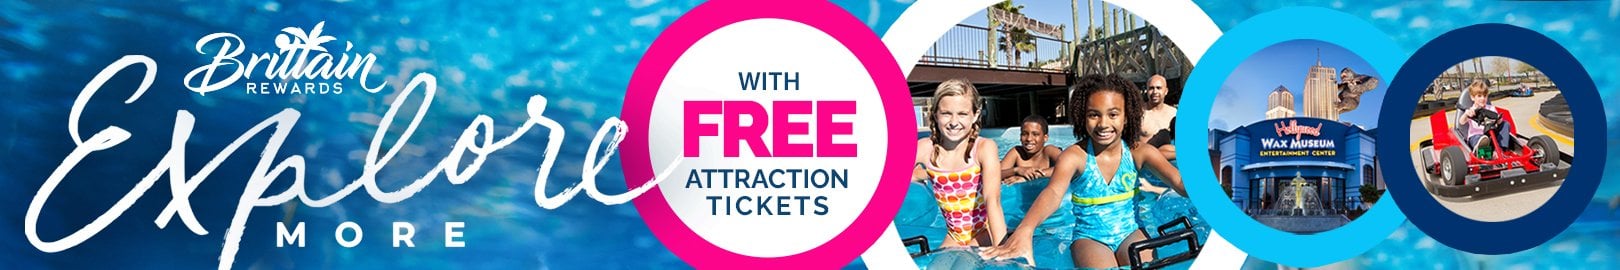 Brittain Rewards Free Attraction Tickets Banner